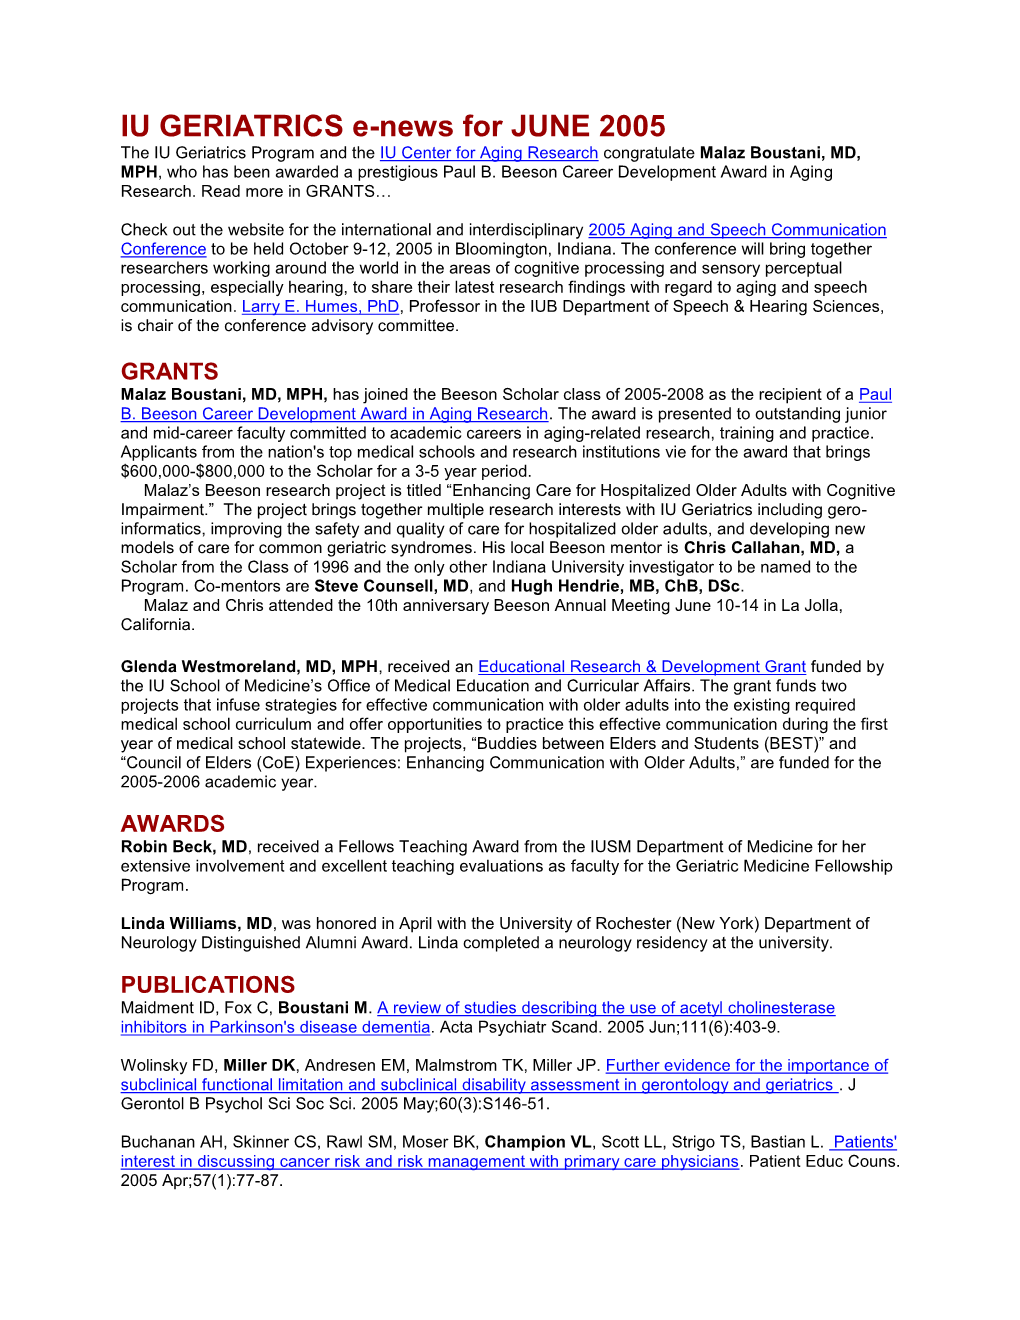 IU GERIATRICS E-News for JUNE 2005